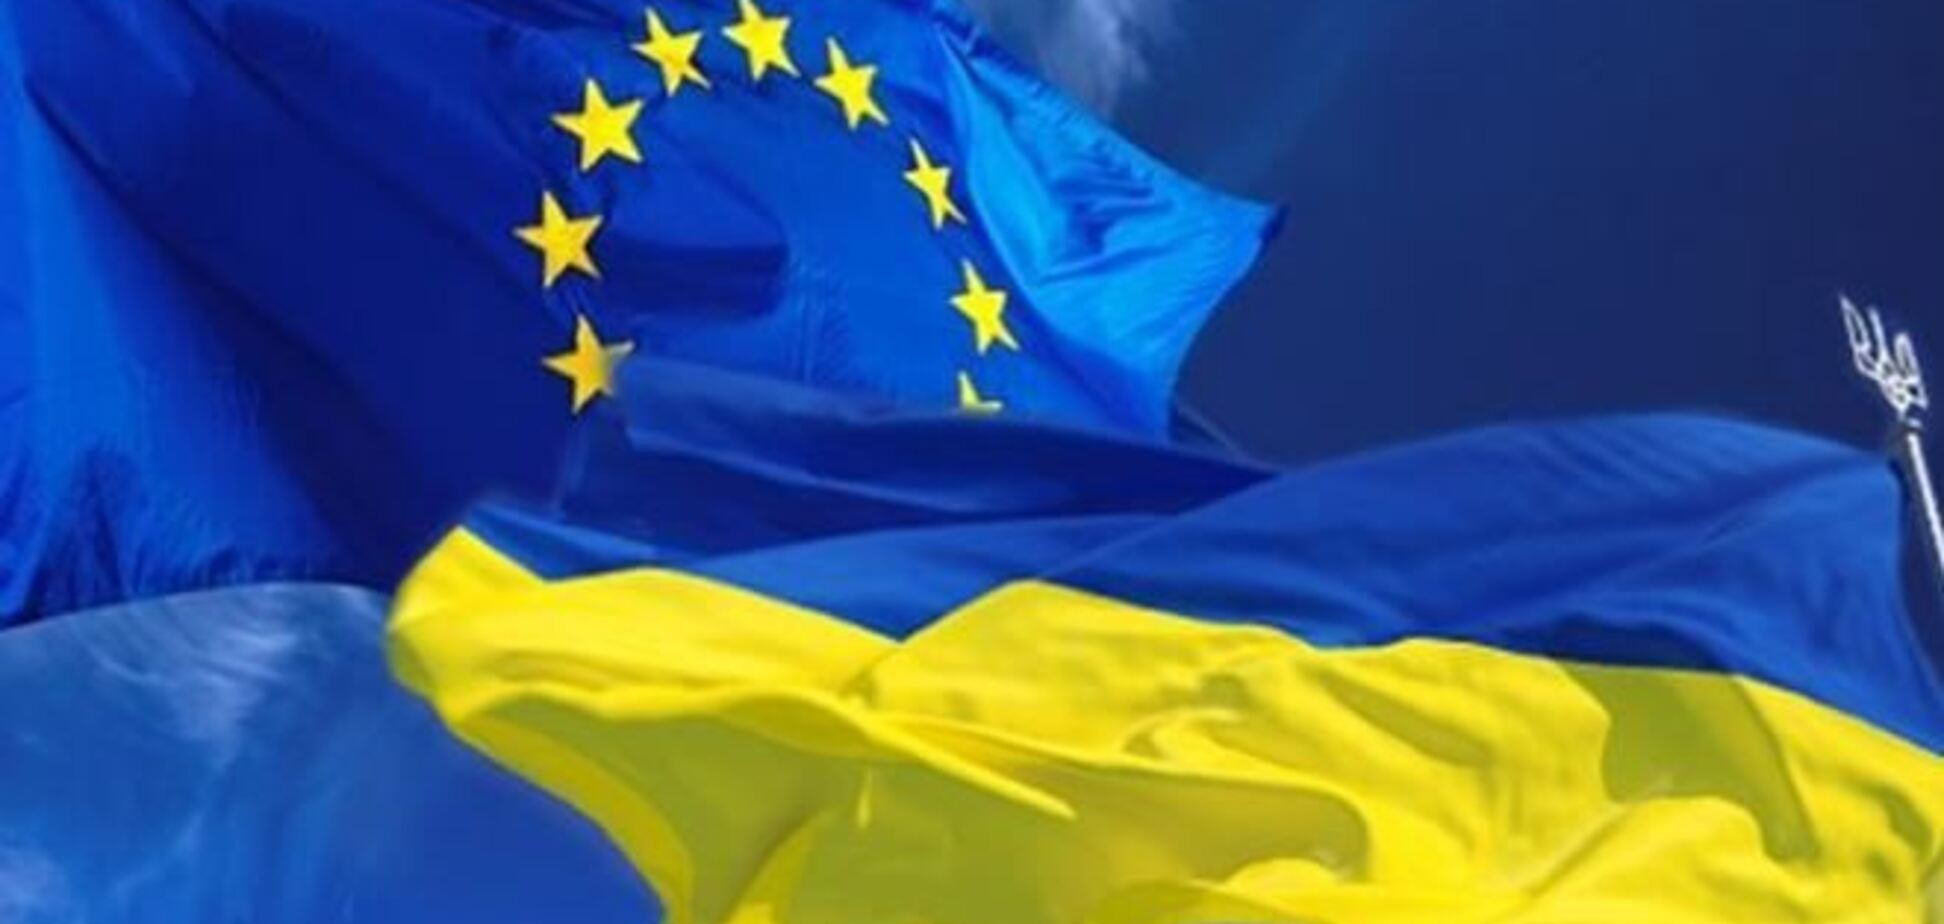 Фюле: ЕС готов оказать Украине финпомощь для имплементации Соглашения об ассоциации 